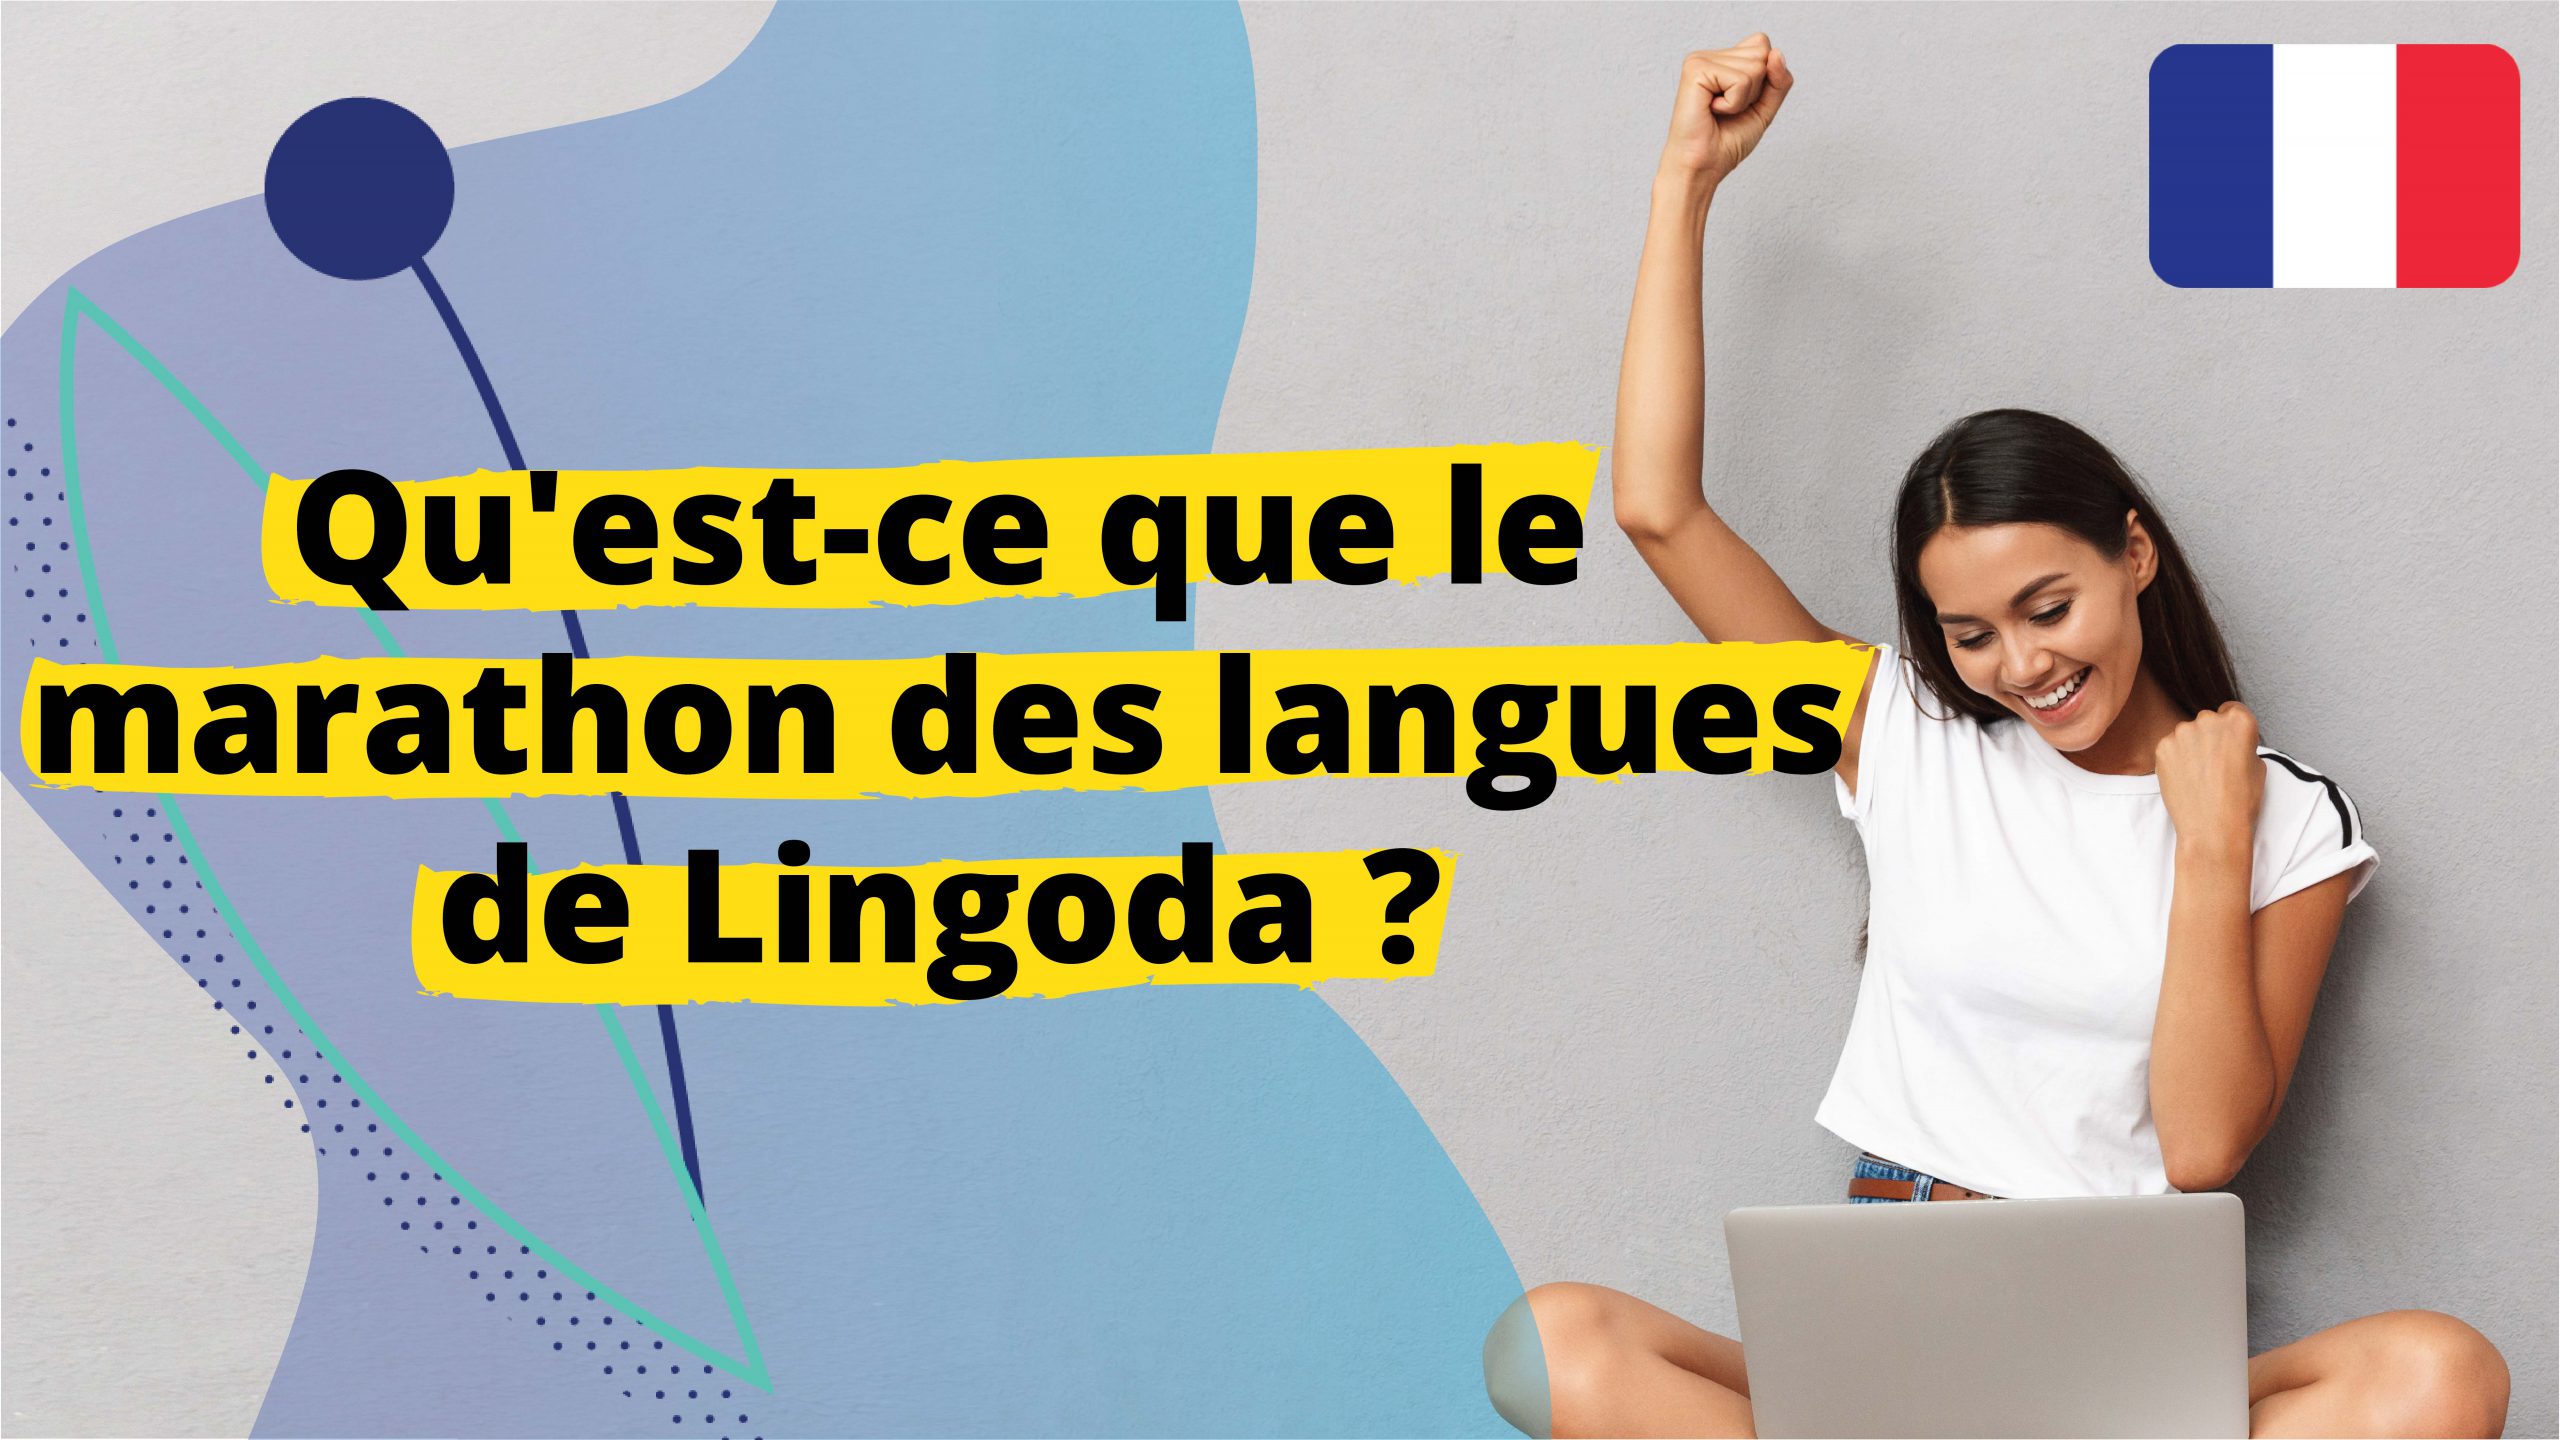 Le Marathon des Langues de Lingoda en 60 Secondes